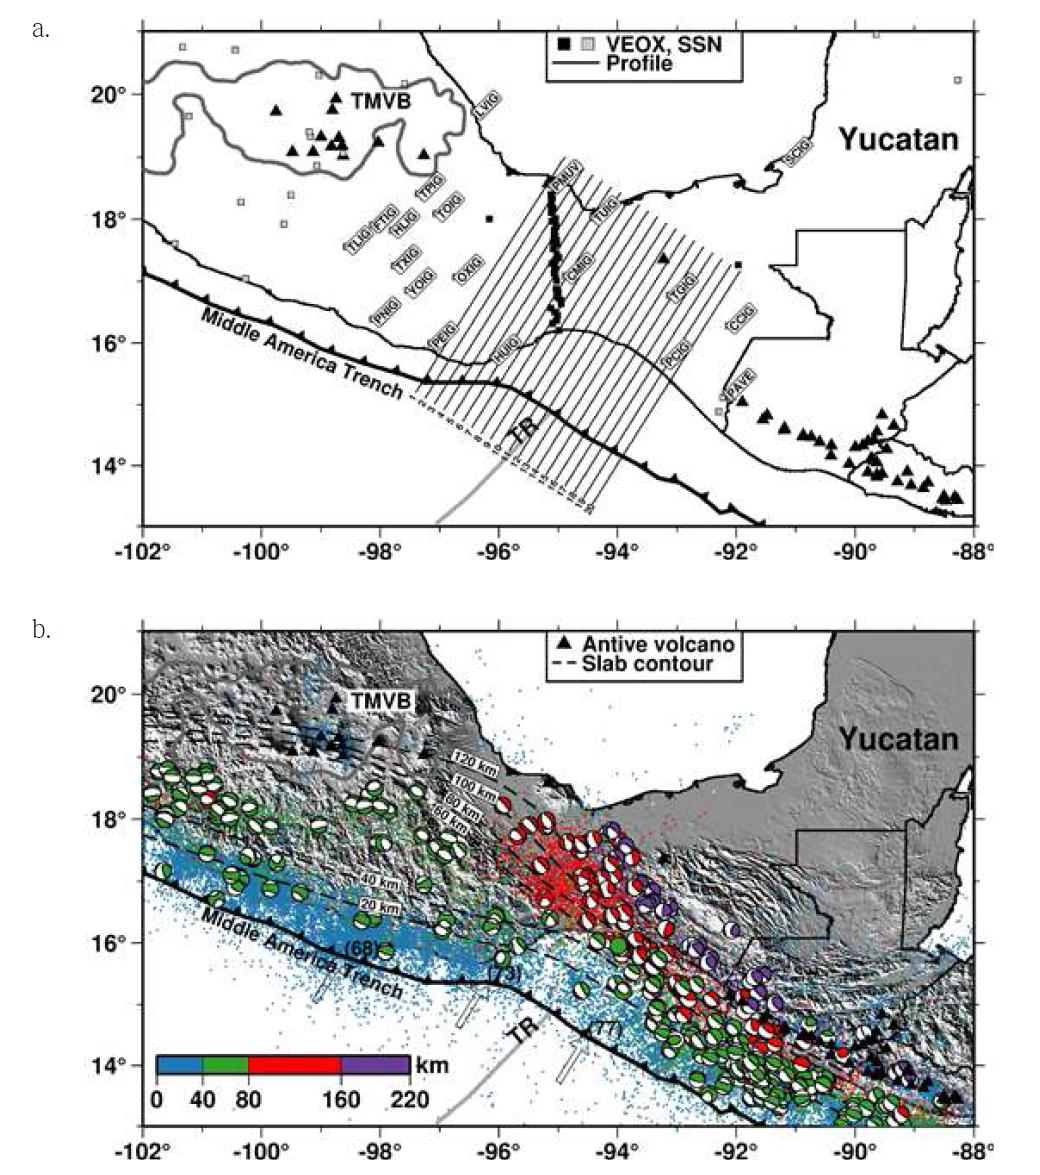 연구지역 지도. (a) 관측소의 위치와 그림 3에서 쓰인 프로파일의 위치를 보여주는 지도. SSN 네트워크 중에서 본 연구에서 사용된 20개의 관측소의 위치와 코드를 보여준다. VEOXVeracruz- Oaxaca Subduction Experiment, SSN- Service Seismological National. (b) 지진, 판의 상대적 인 운동 방향(투명한 화살표), 그리고 활동성 지진(빨간 삼각형)을 보여주는 지형 지도. 색깔이 있는 원은 1990년 부터 2012년 사이에 발생한 재결정되지 않은 지진의 위치를 보여준다. global CMT catalog를 출처로 하는 진앙분석 데이터가 1976년부터 2013년 까지 비치볼 기호로 표시되어있다. 검 은색 파선은 코코스판의 깊이에 대한 등치선이다